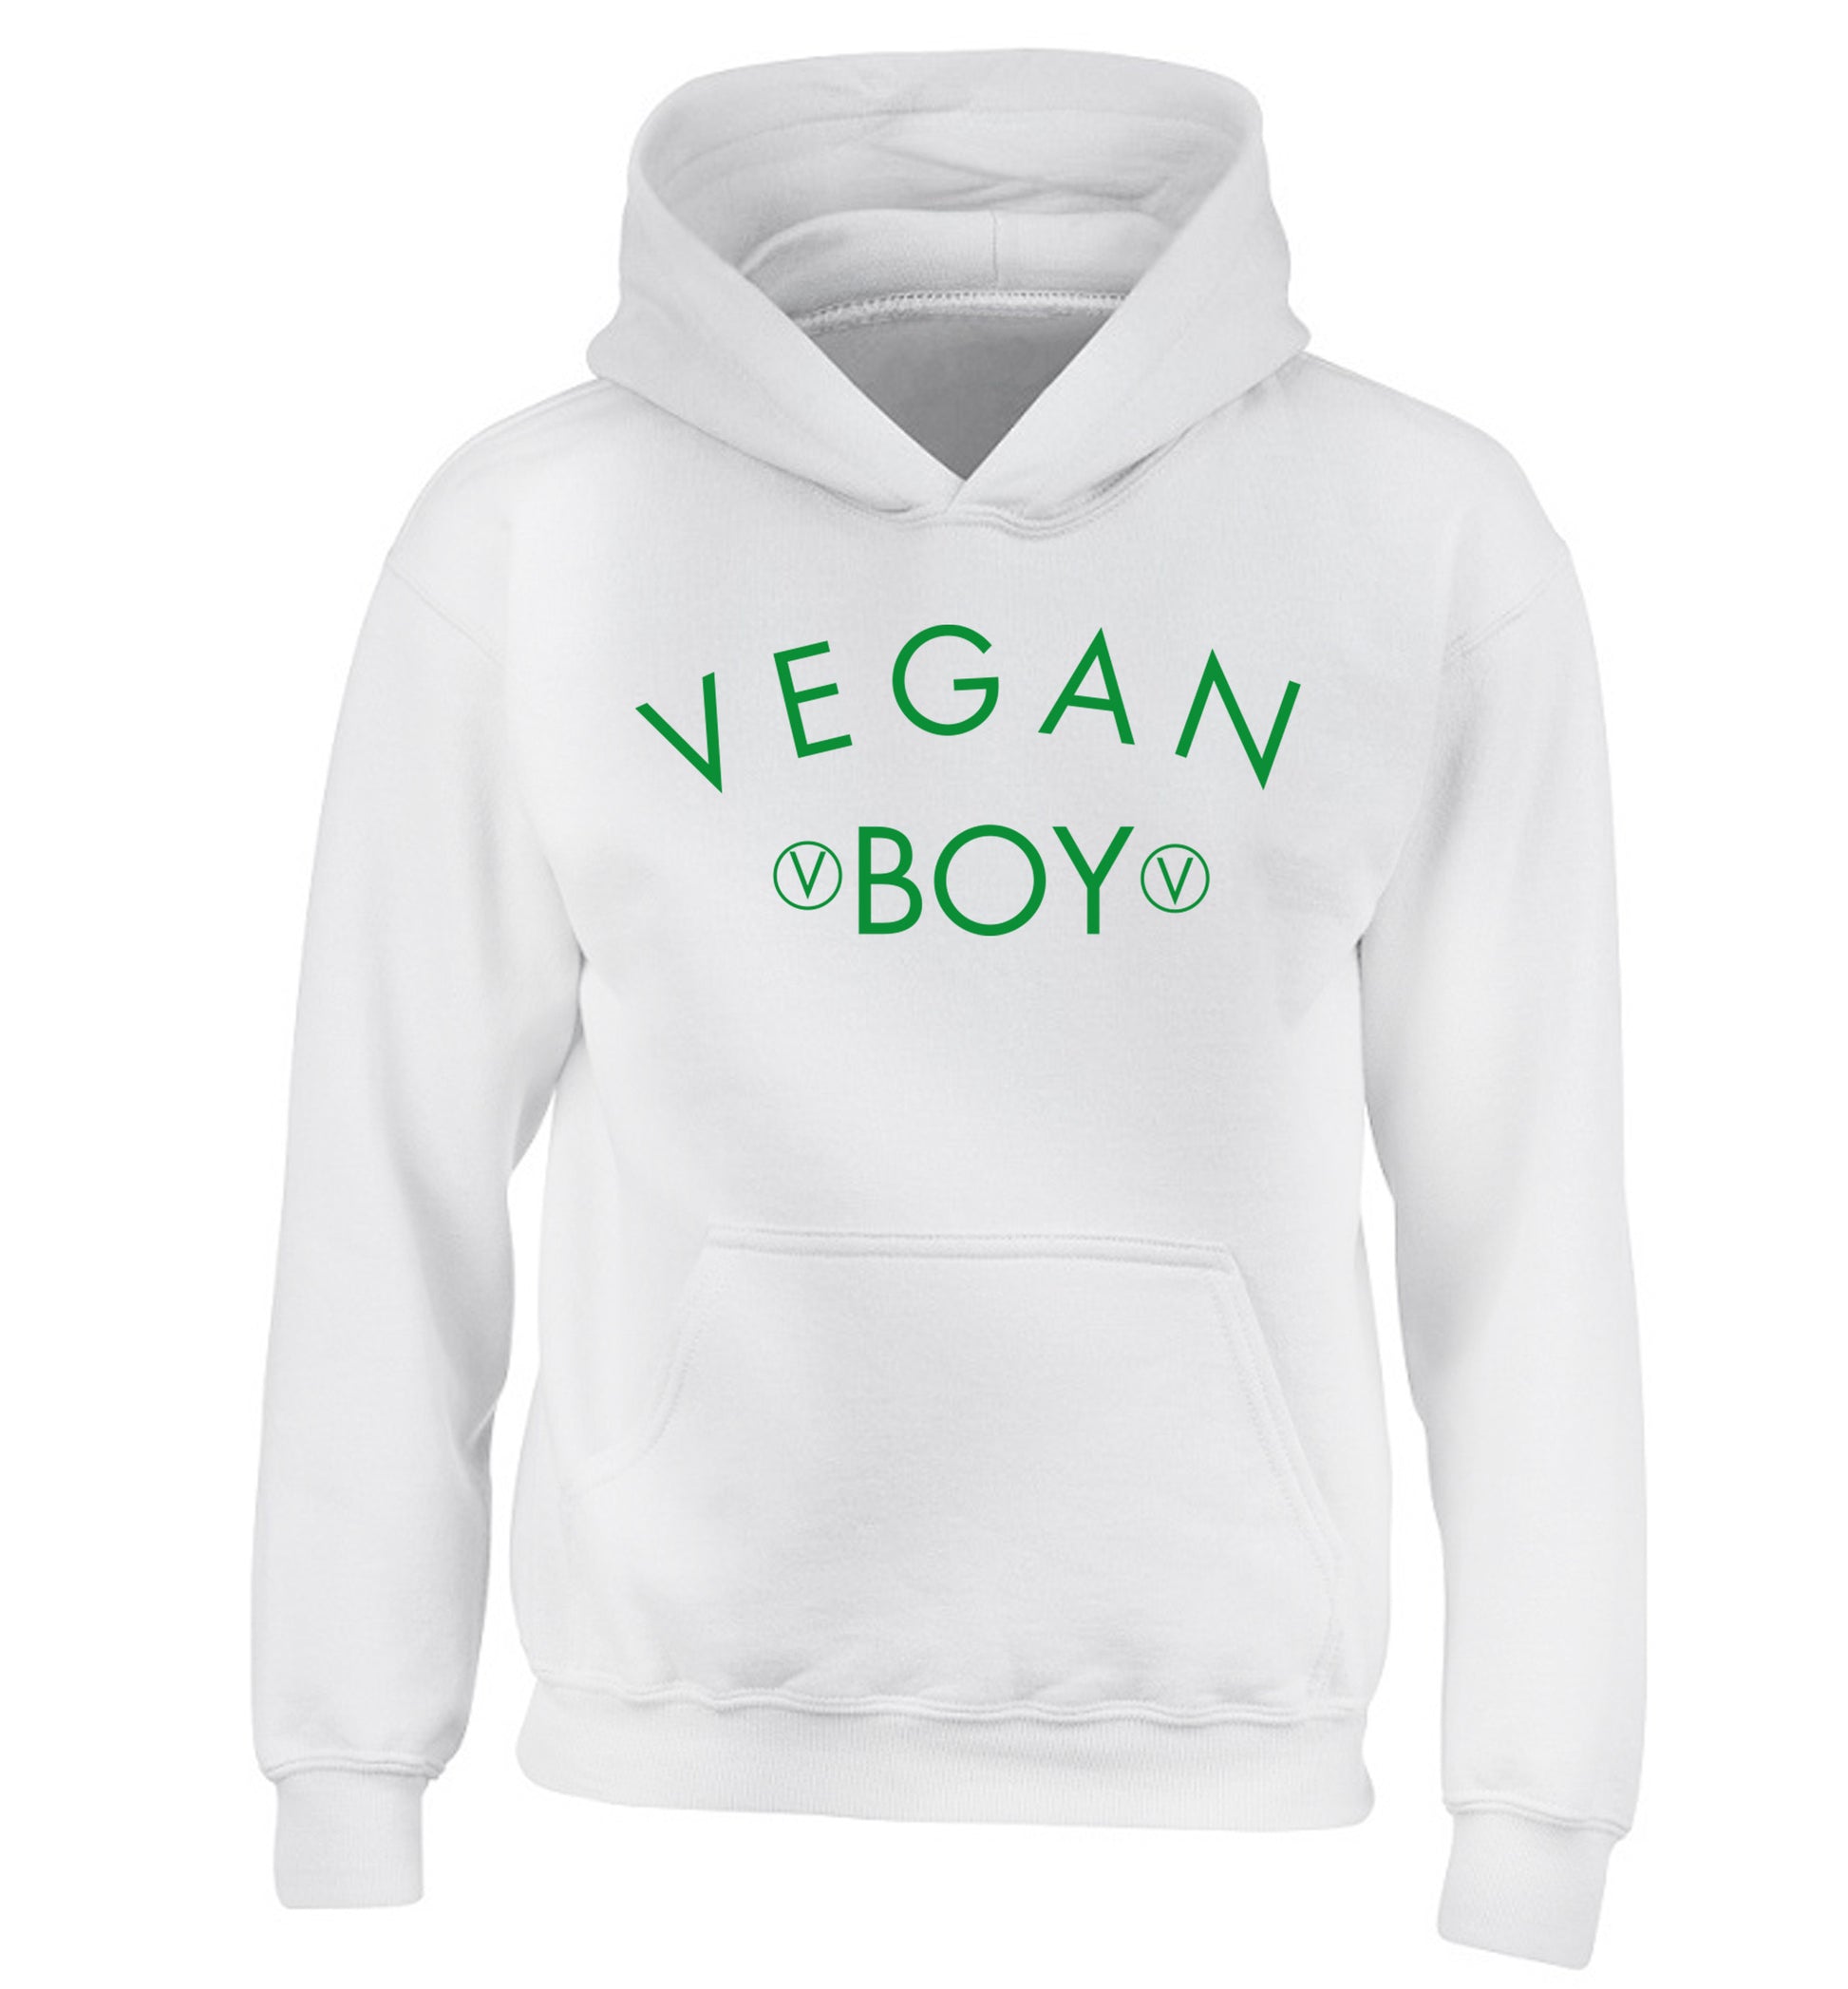 Vegan boy children's white hoodie 12-14 Years